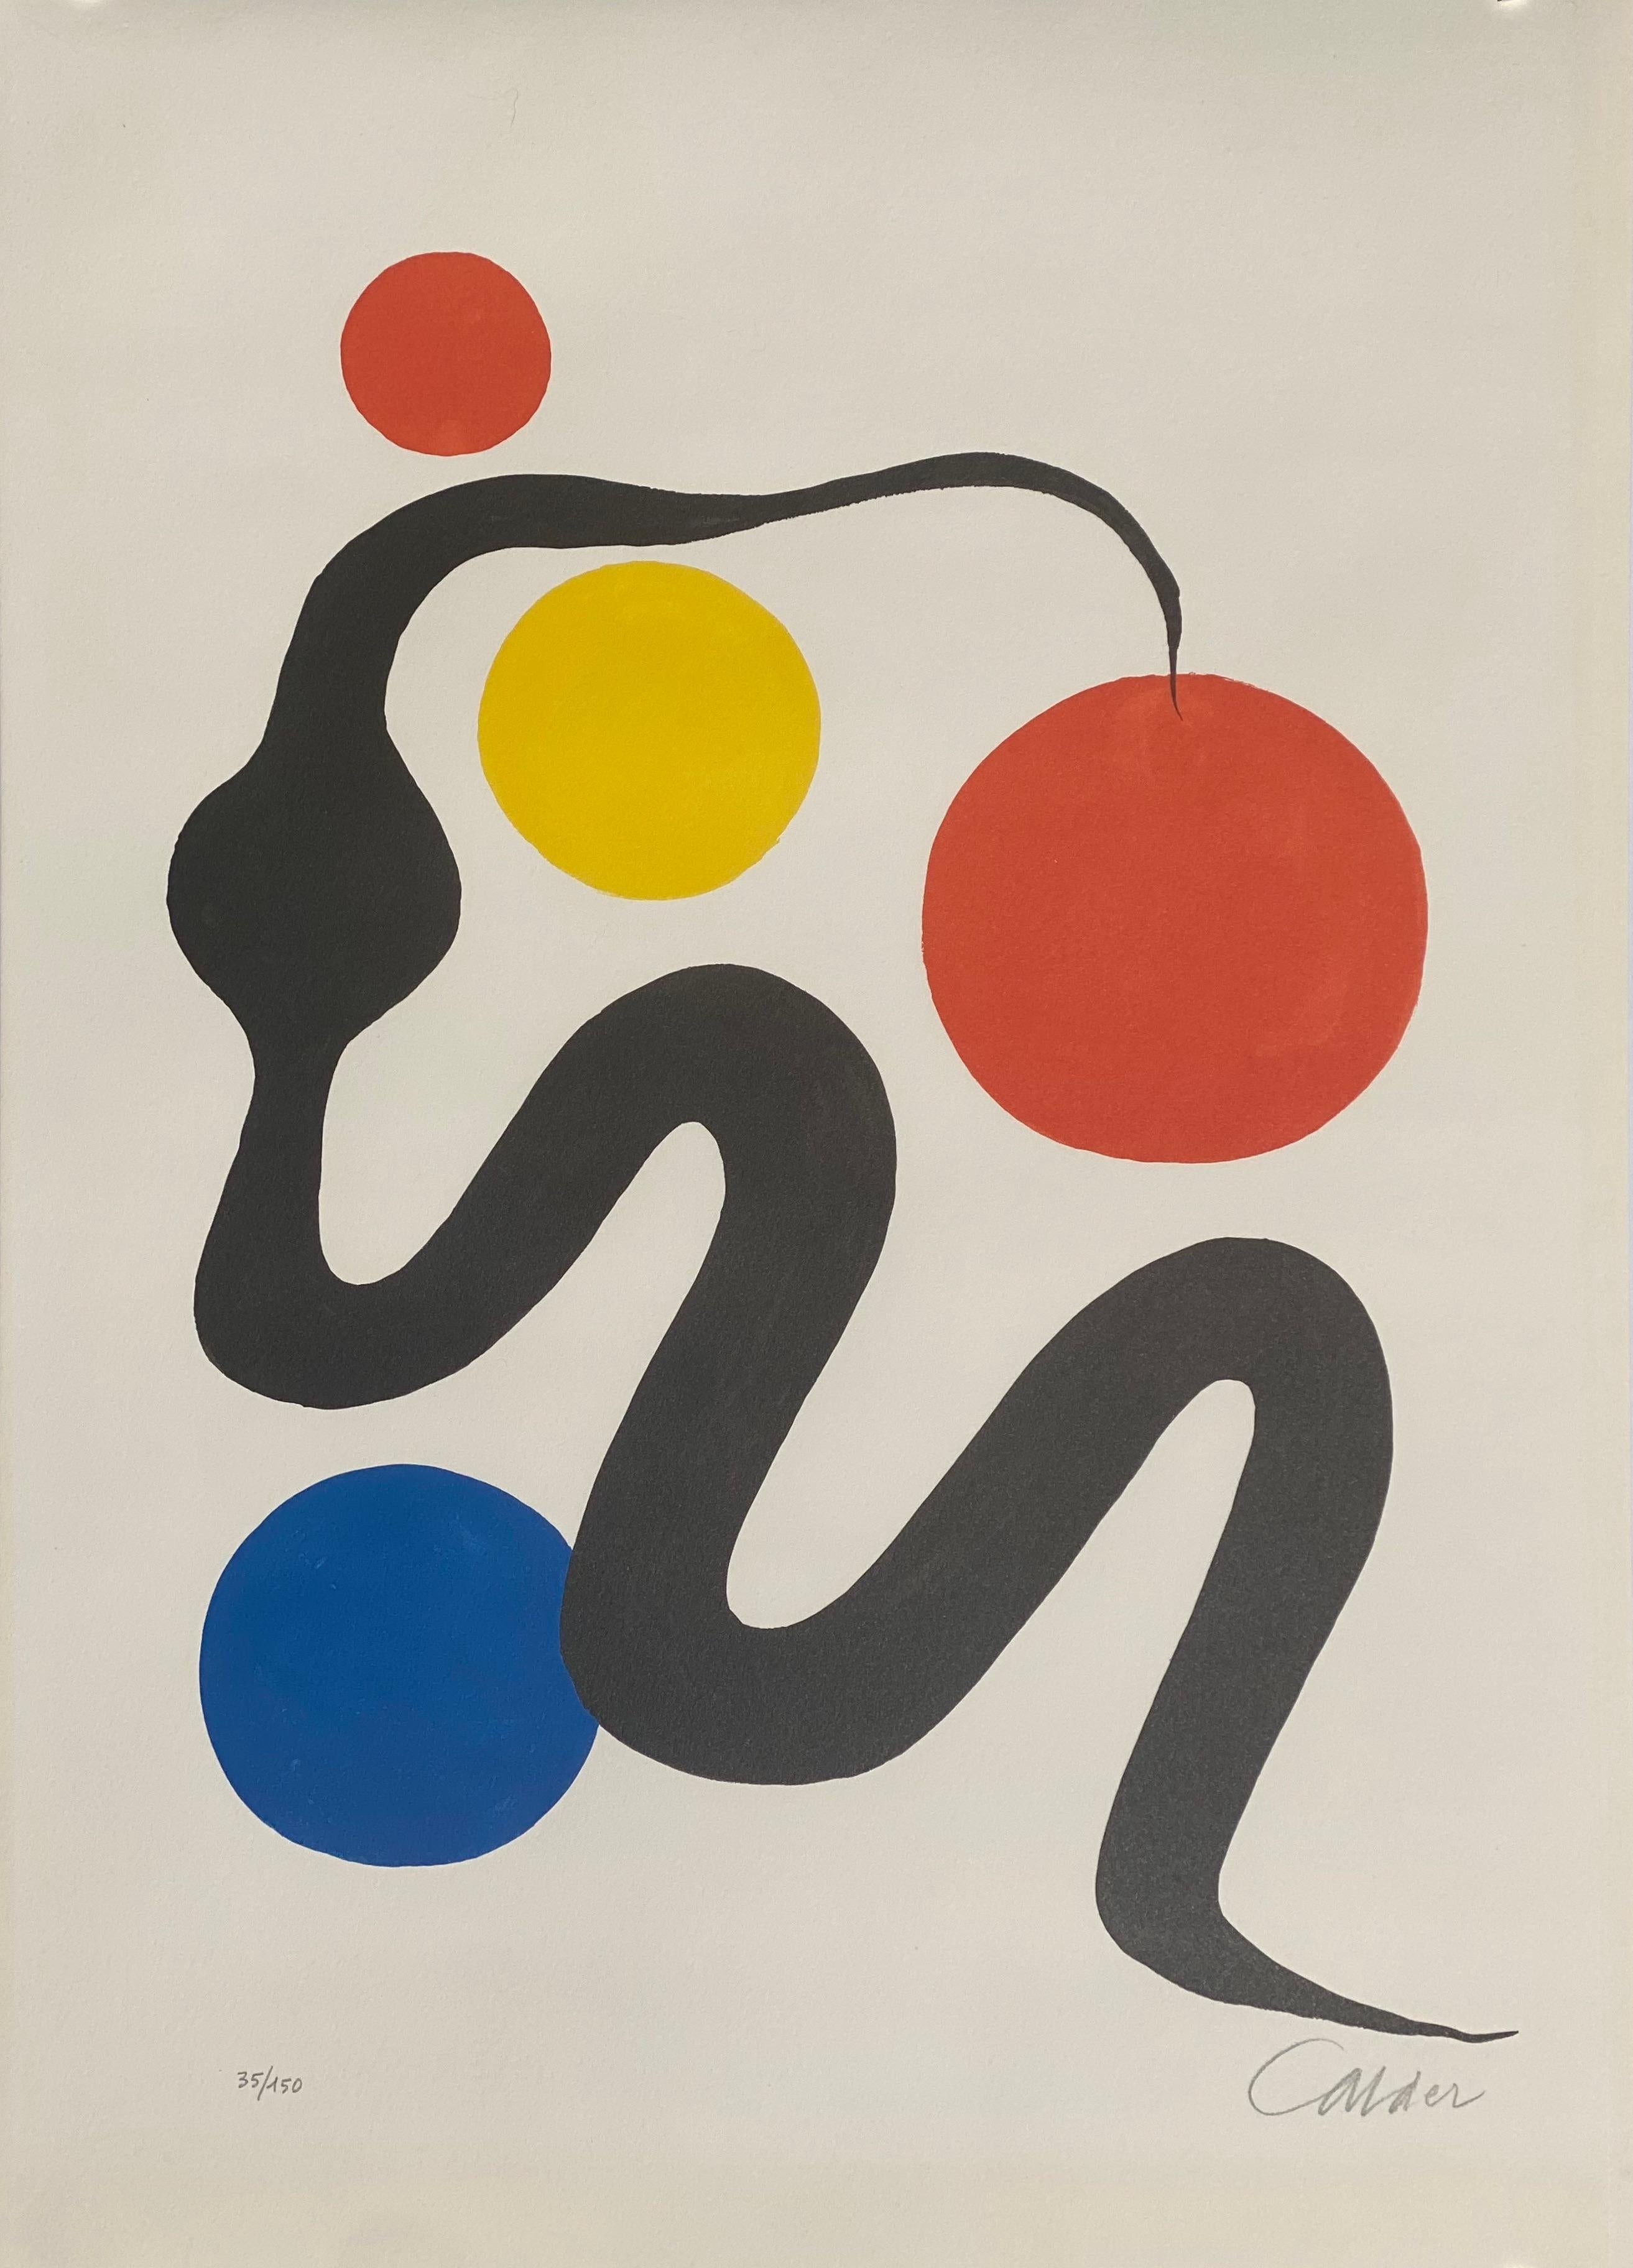 The Serpent - Print by Alexander Calder